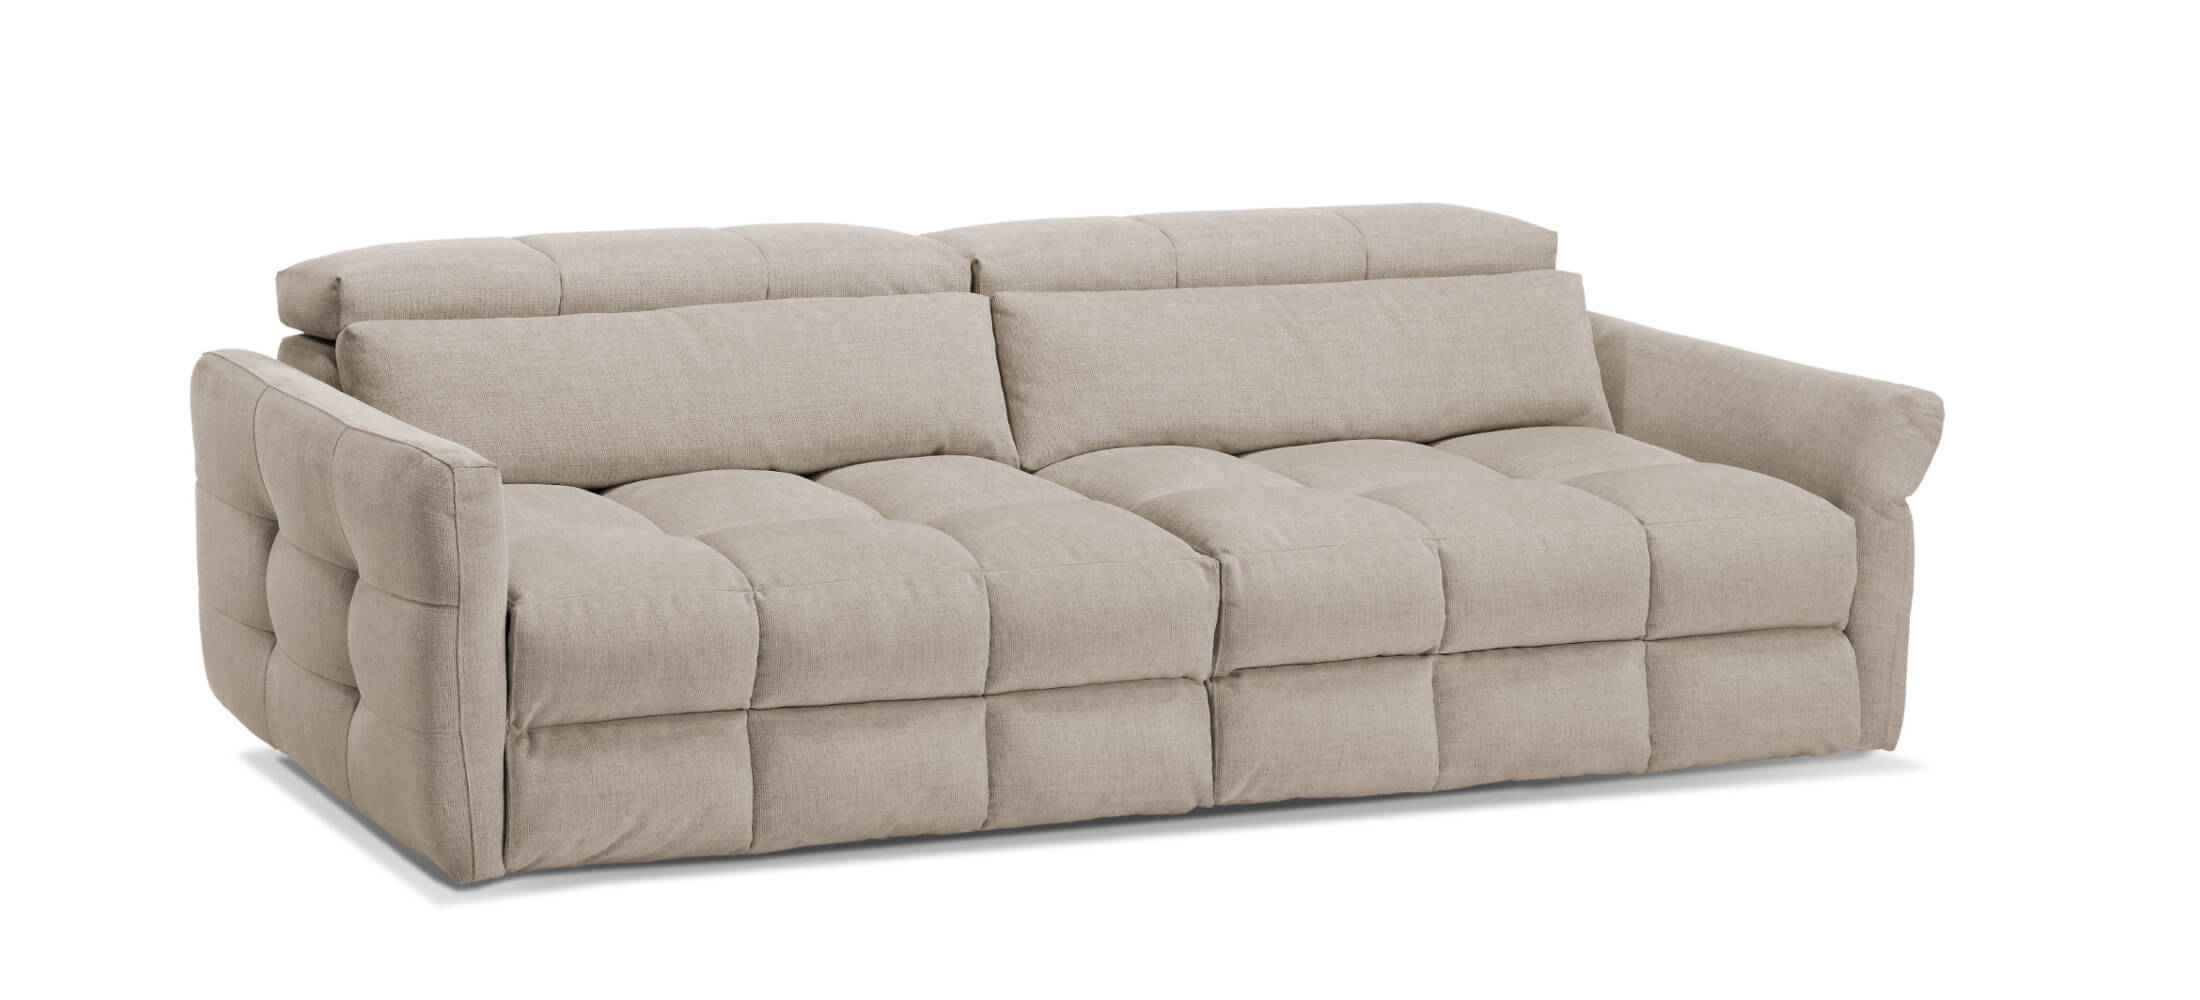 sofas de diseño castellon